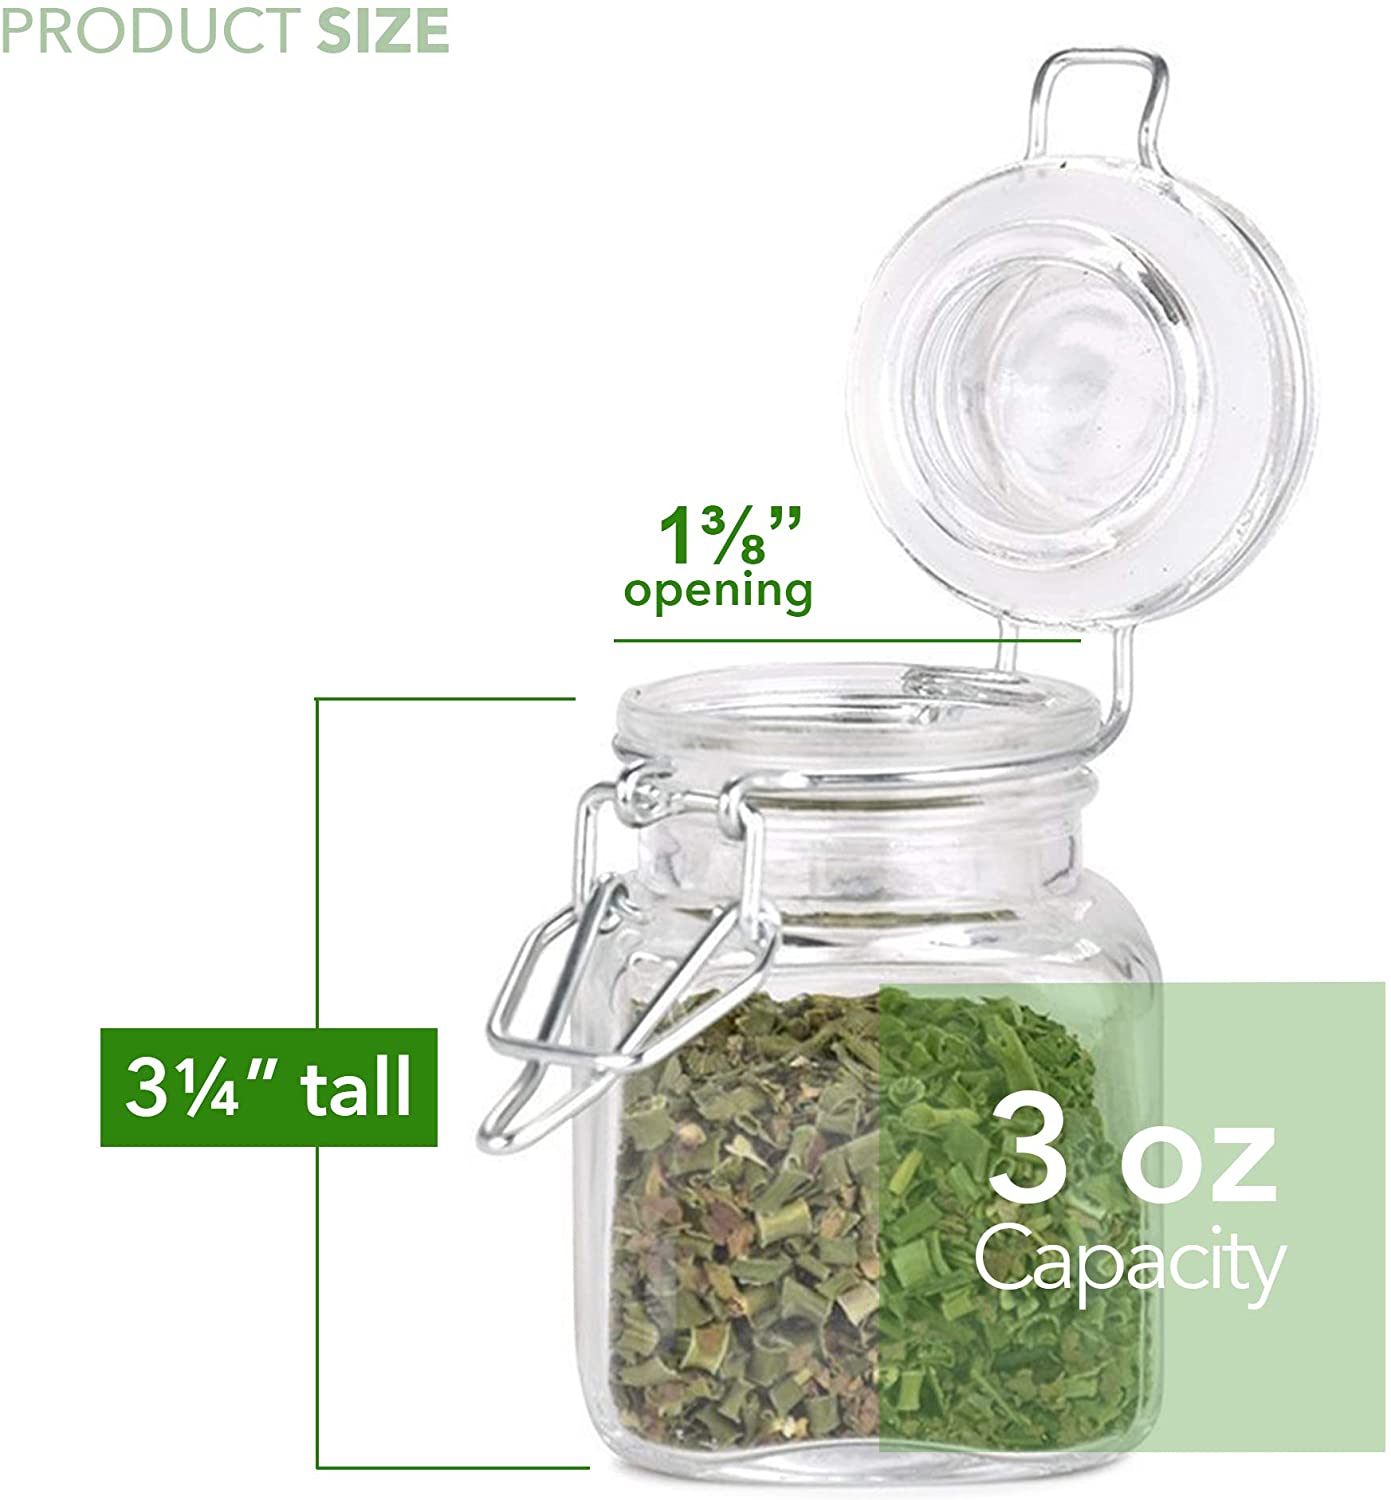 Wholesale Multifunctional Glass Food Storage Jars Airtight Lid